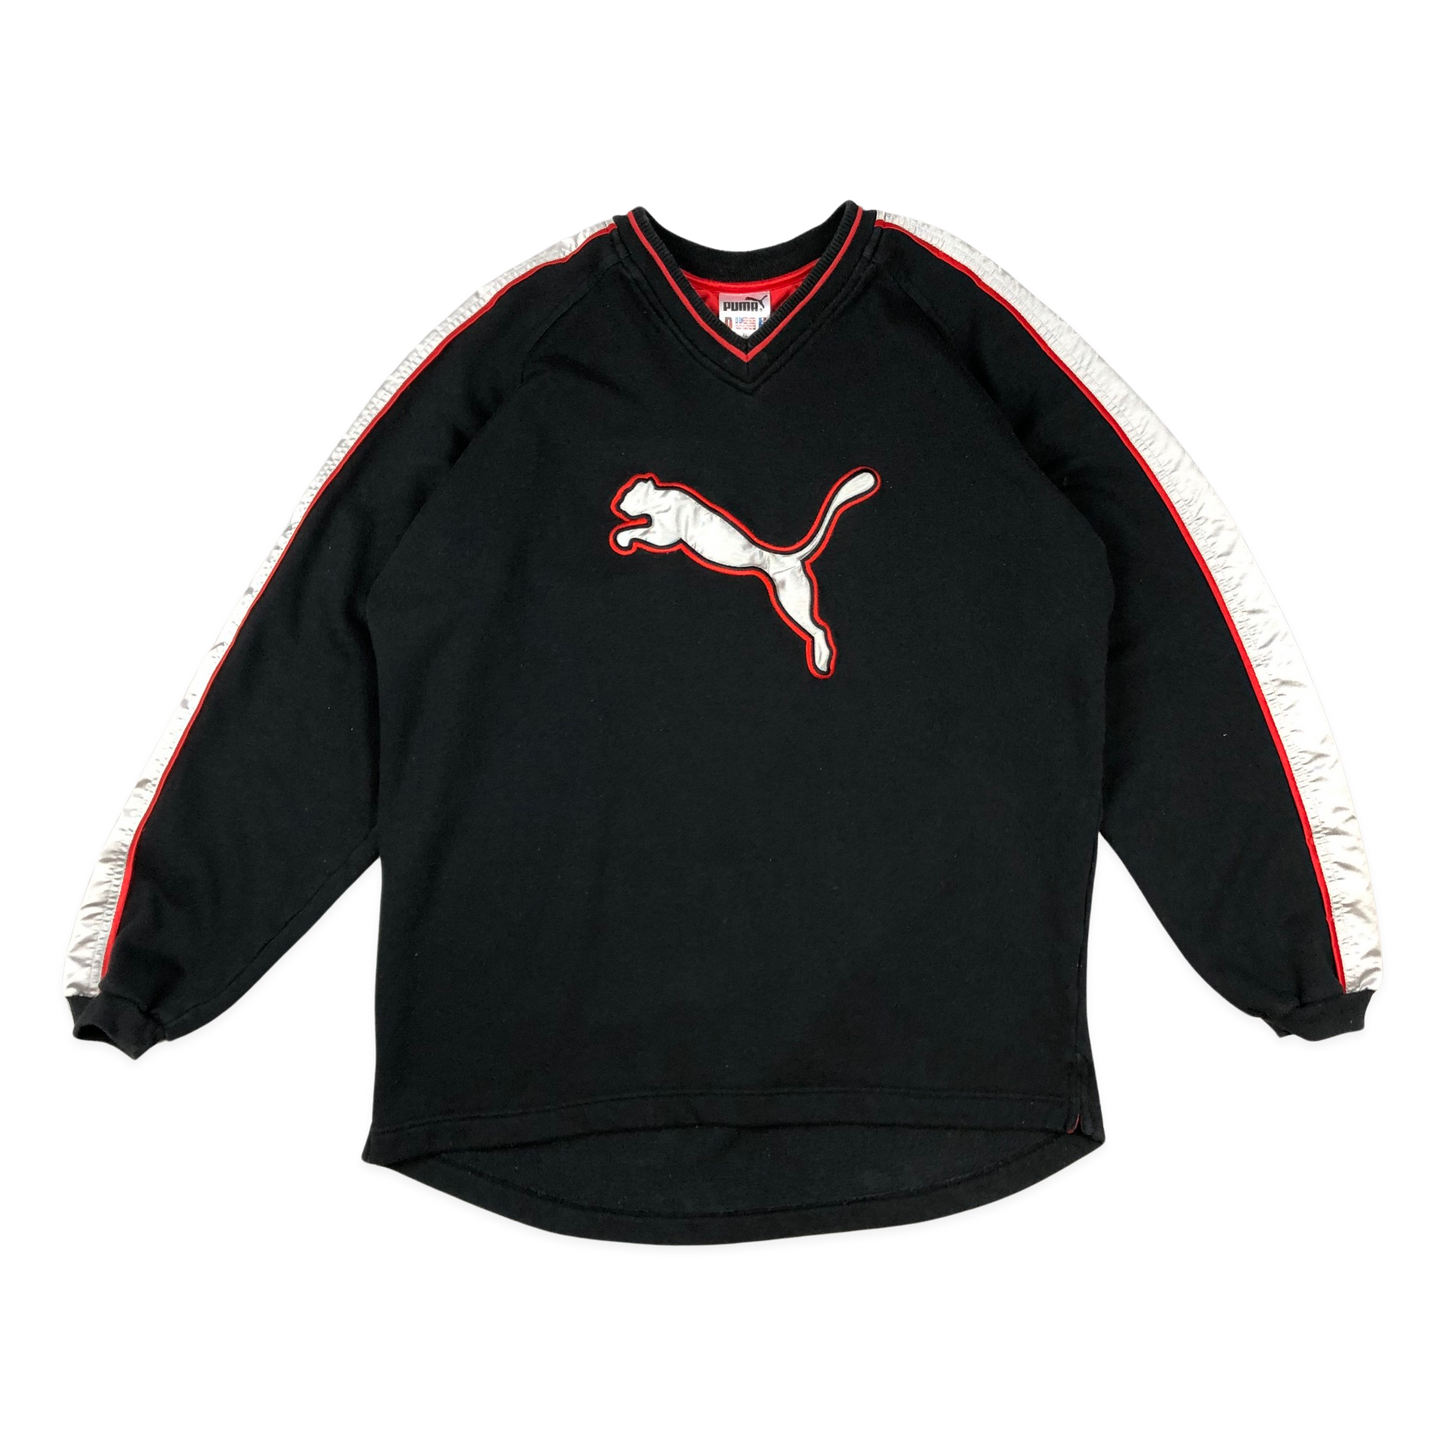 Vintage 90s Puma Black Sweatshirt